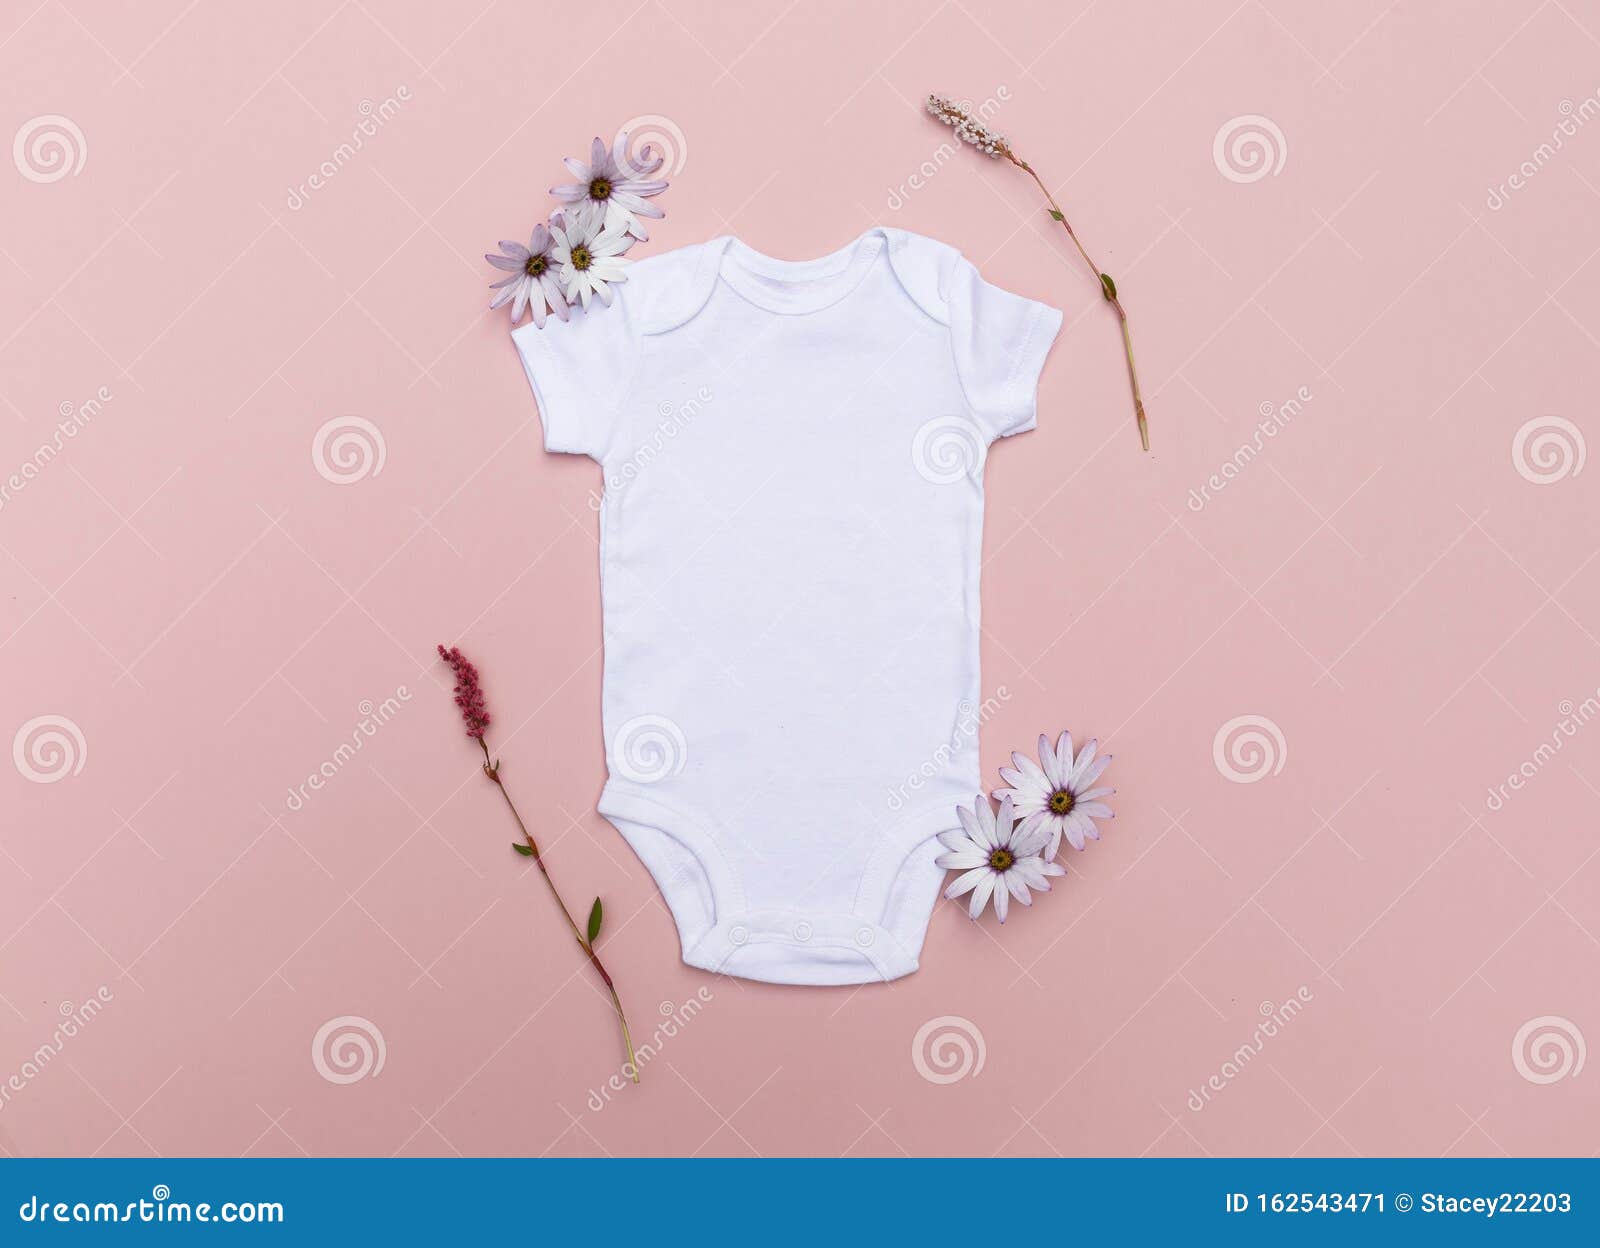 baby bodysuit mockup  baby bodysuit MOCKUP flatlay PHOTO  blank White baby Mock-up Stock Photo baby bodysuit Mockup PHOTO